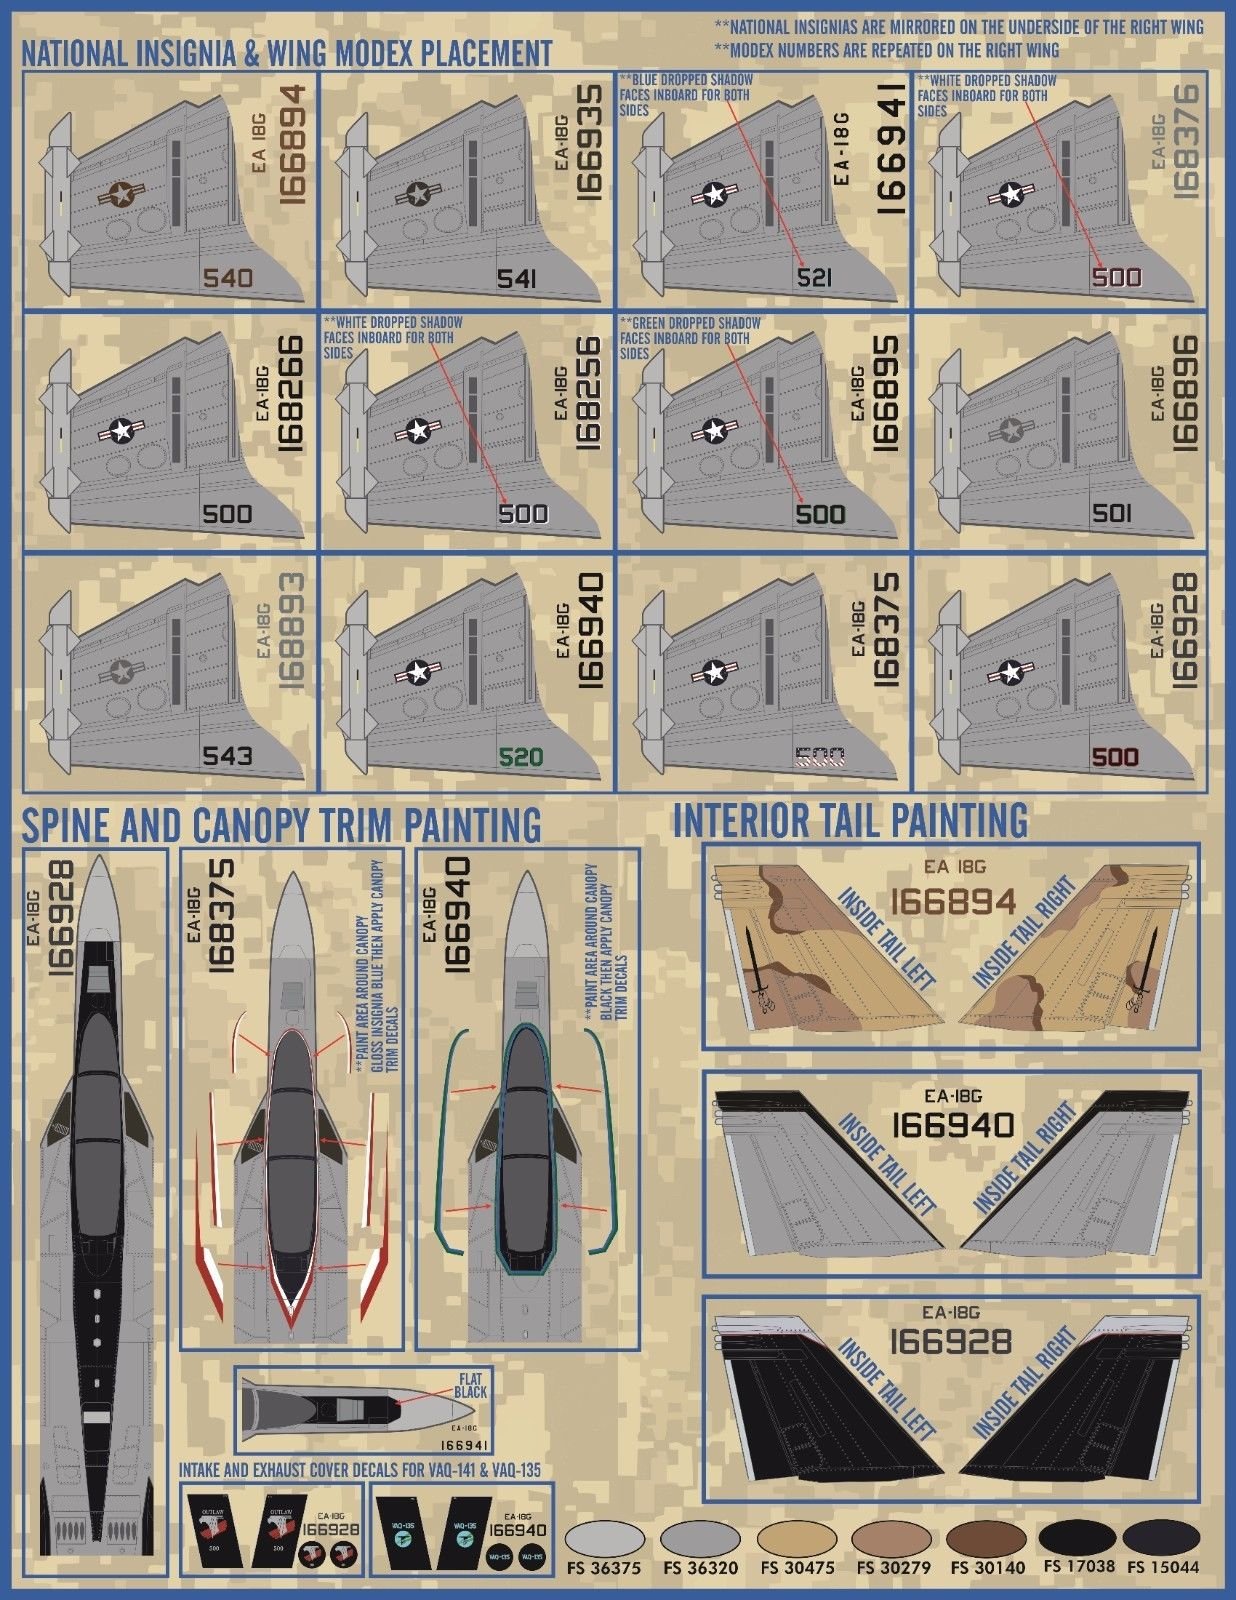 1/48 EA-18G 咆哮者电子攻击机"精选系列"(1) - 点击图像关闭